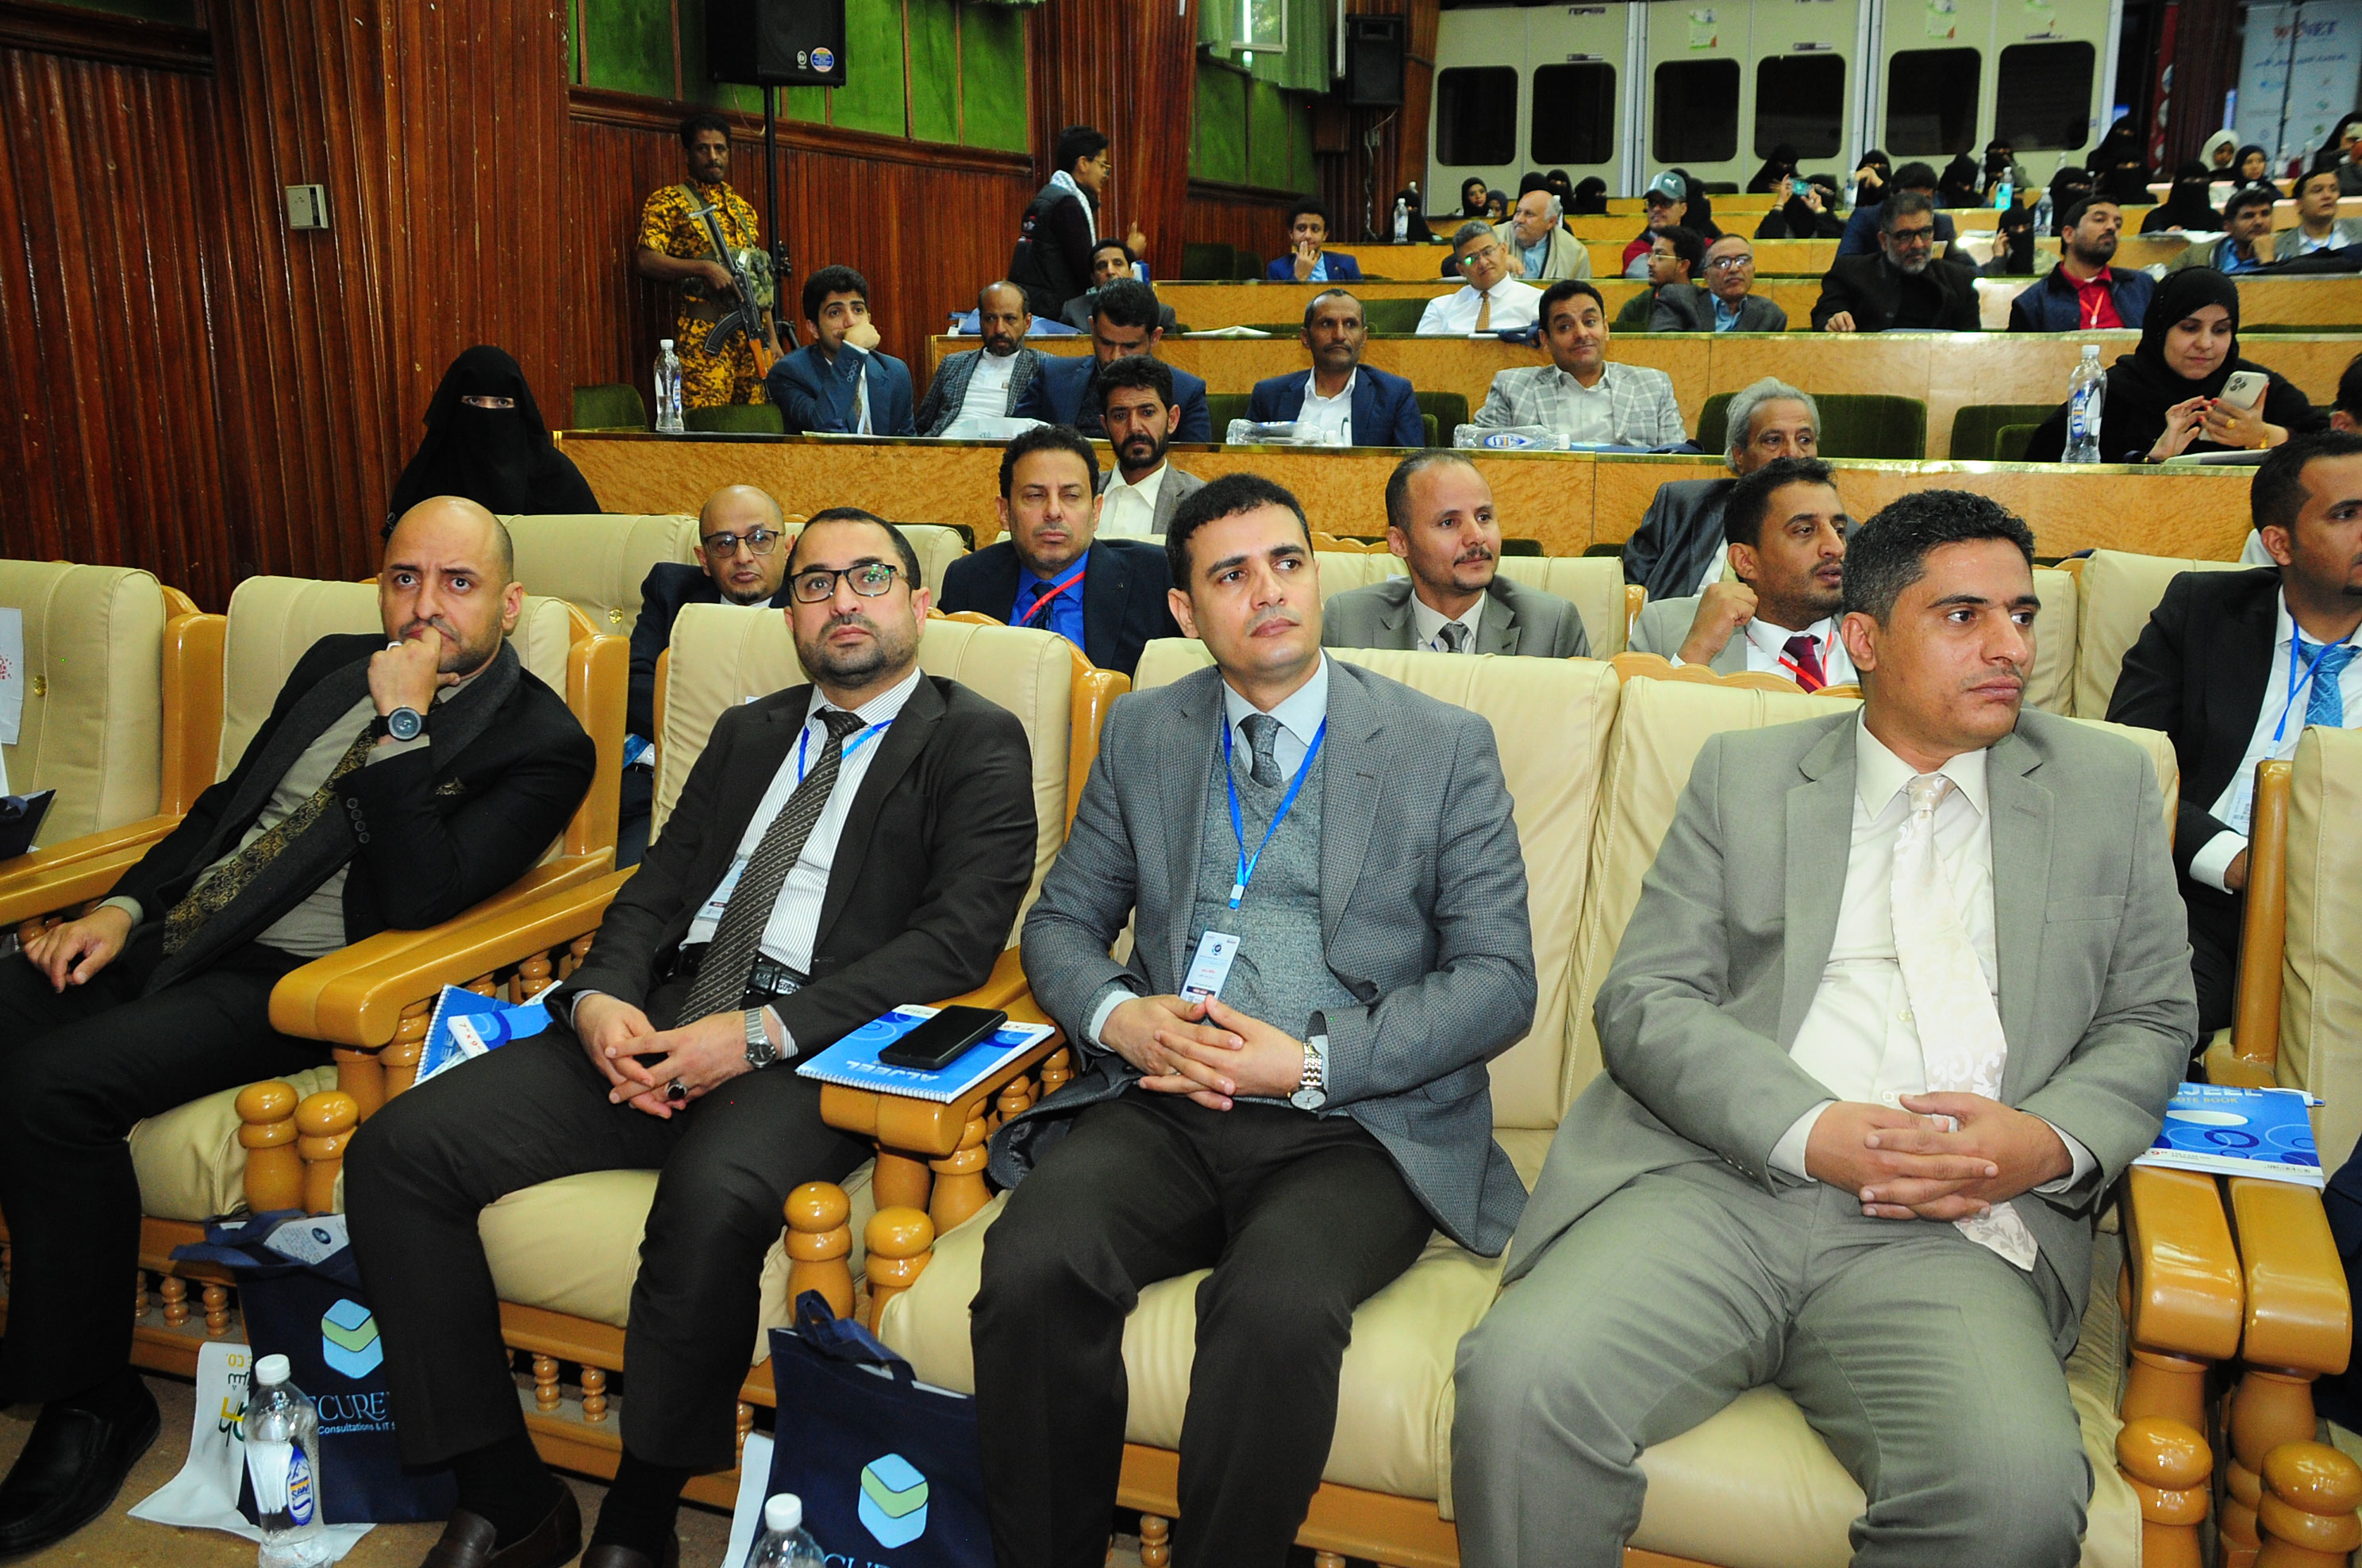 المؤتمر الثاني للتحول الرقمي في اليمن والمعرض المرافق له